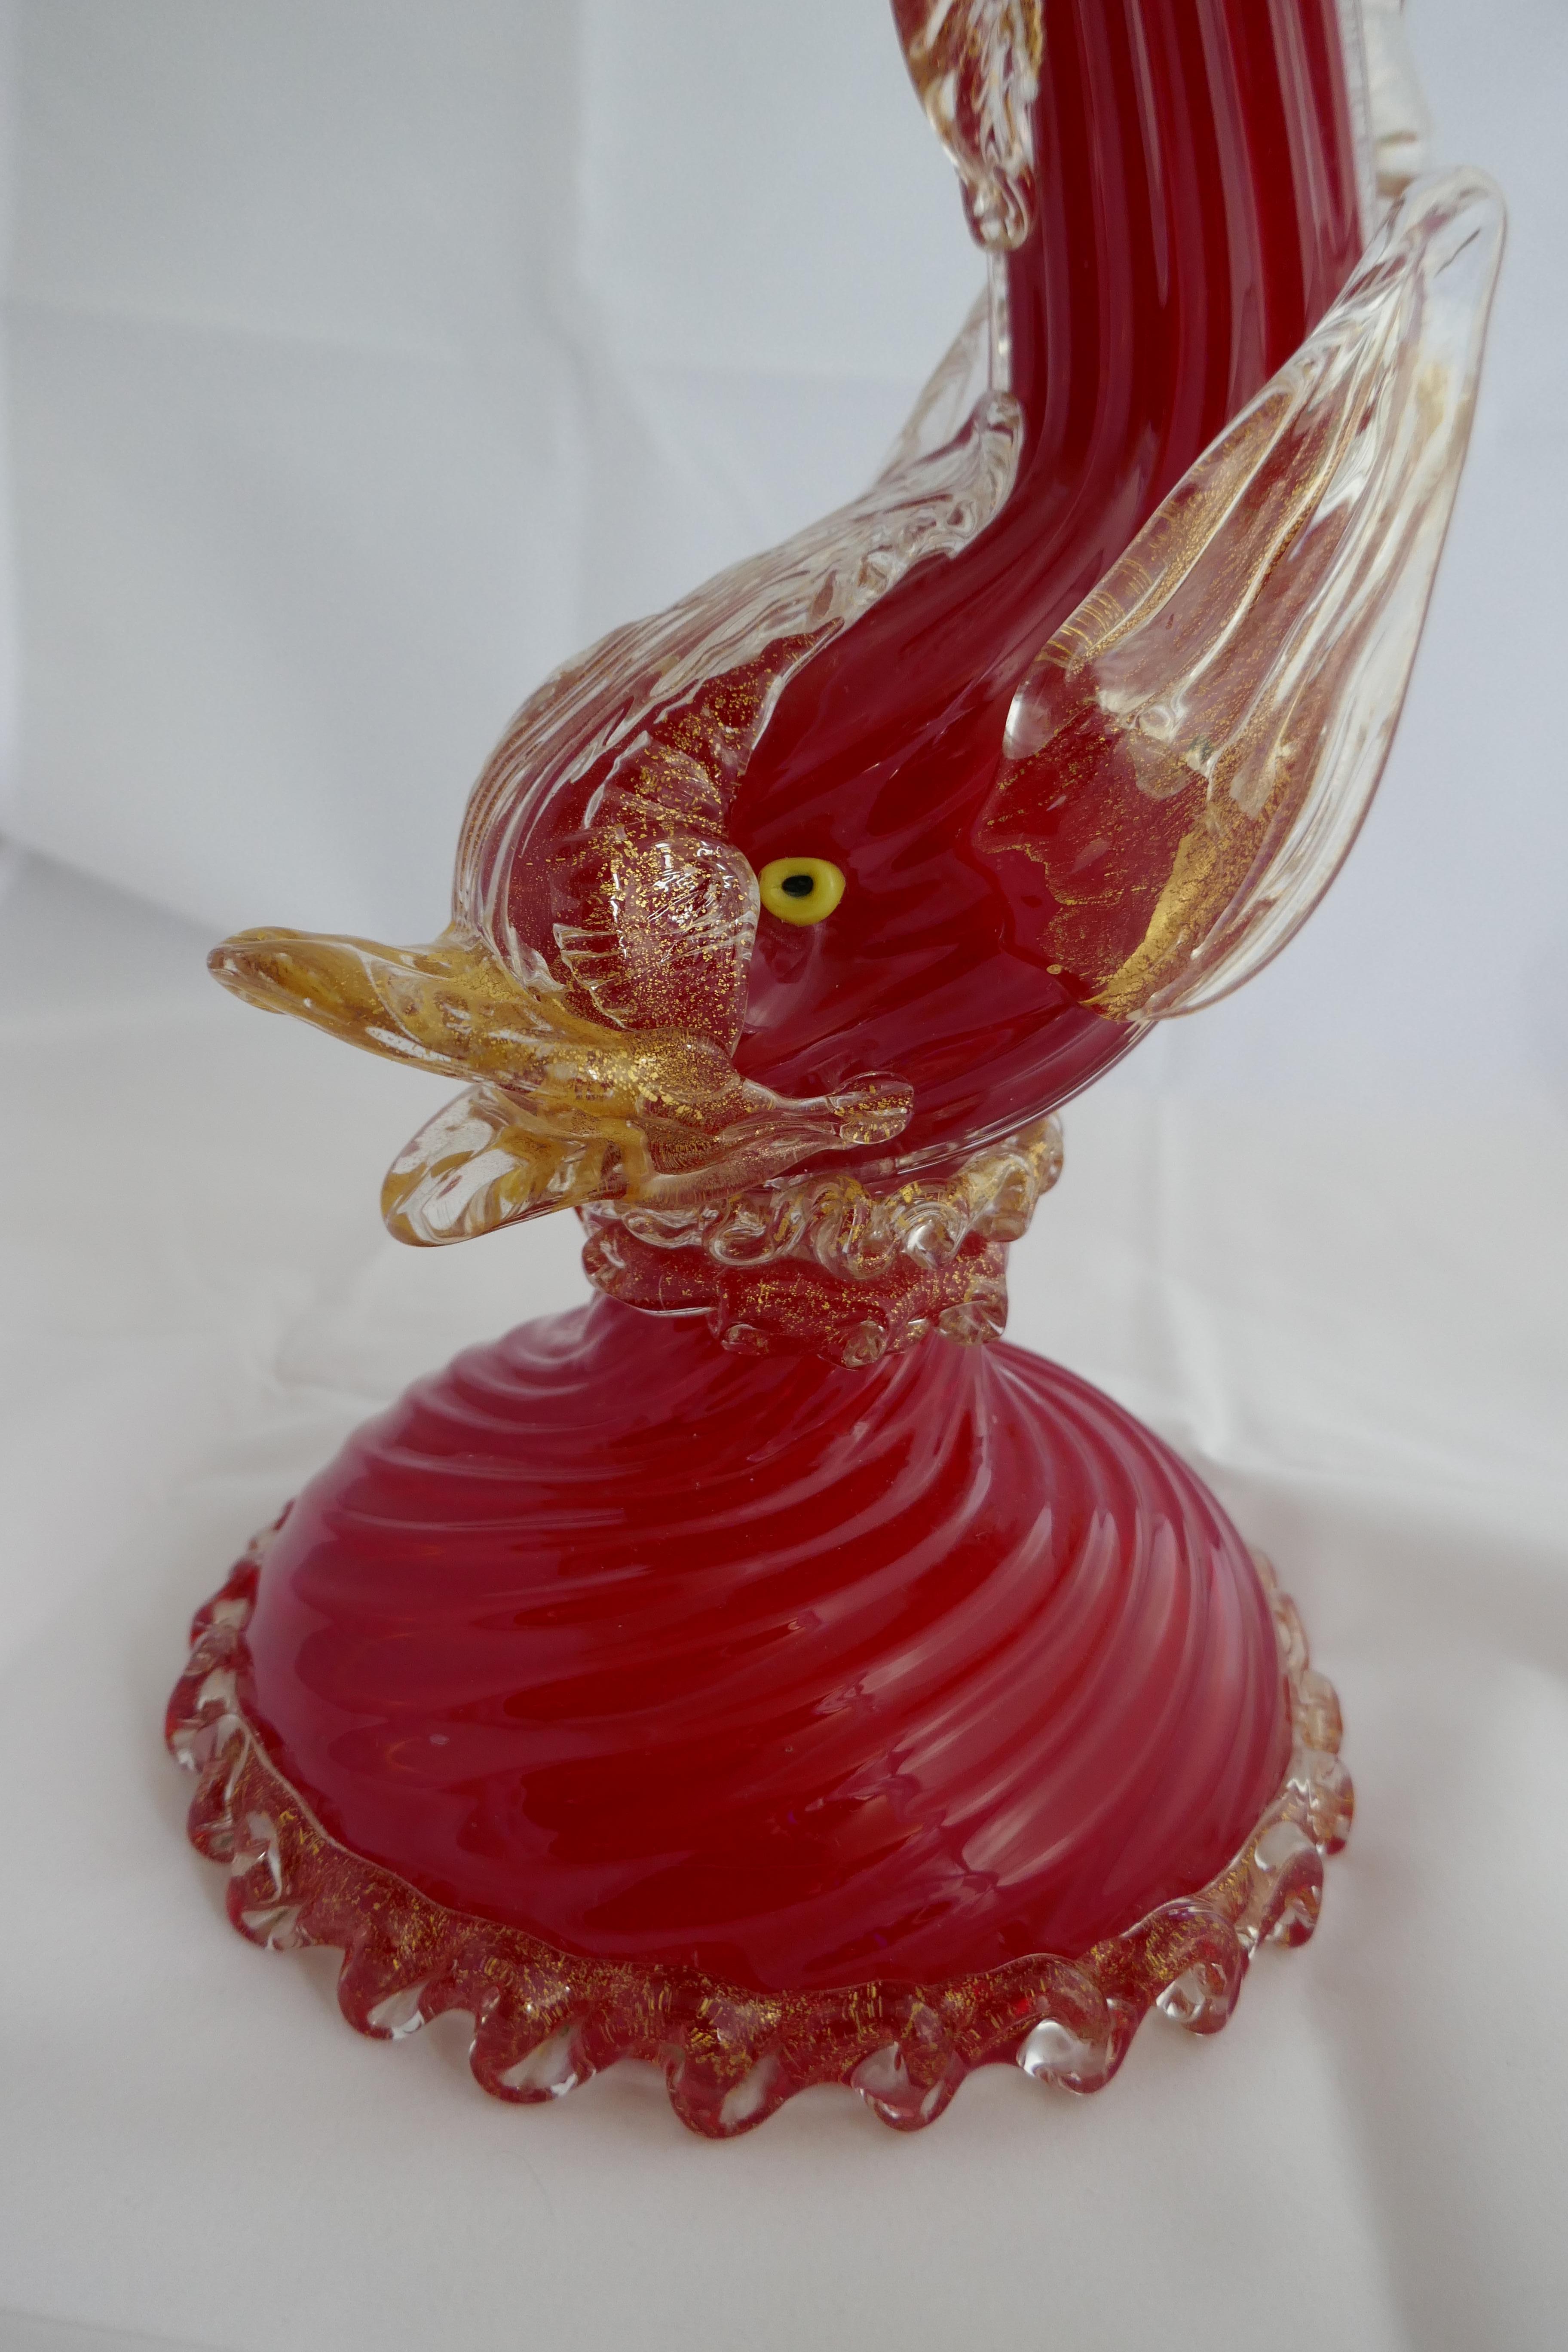 Hollywood Regency rote venezianische Murano Glas Fisch/Delphin Tischlampe

Diese Lampe ist in sehr gutem Vintage-Zustand, keine Chips Risse oder Reparaturen

Die Lampe wird Barovier e Toso zugeschrieben und wurde um 1940 hergestellt. Sie besteht aus